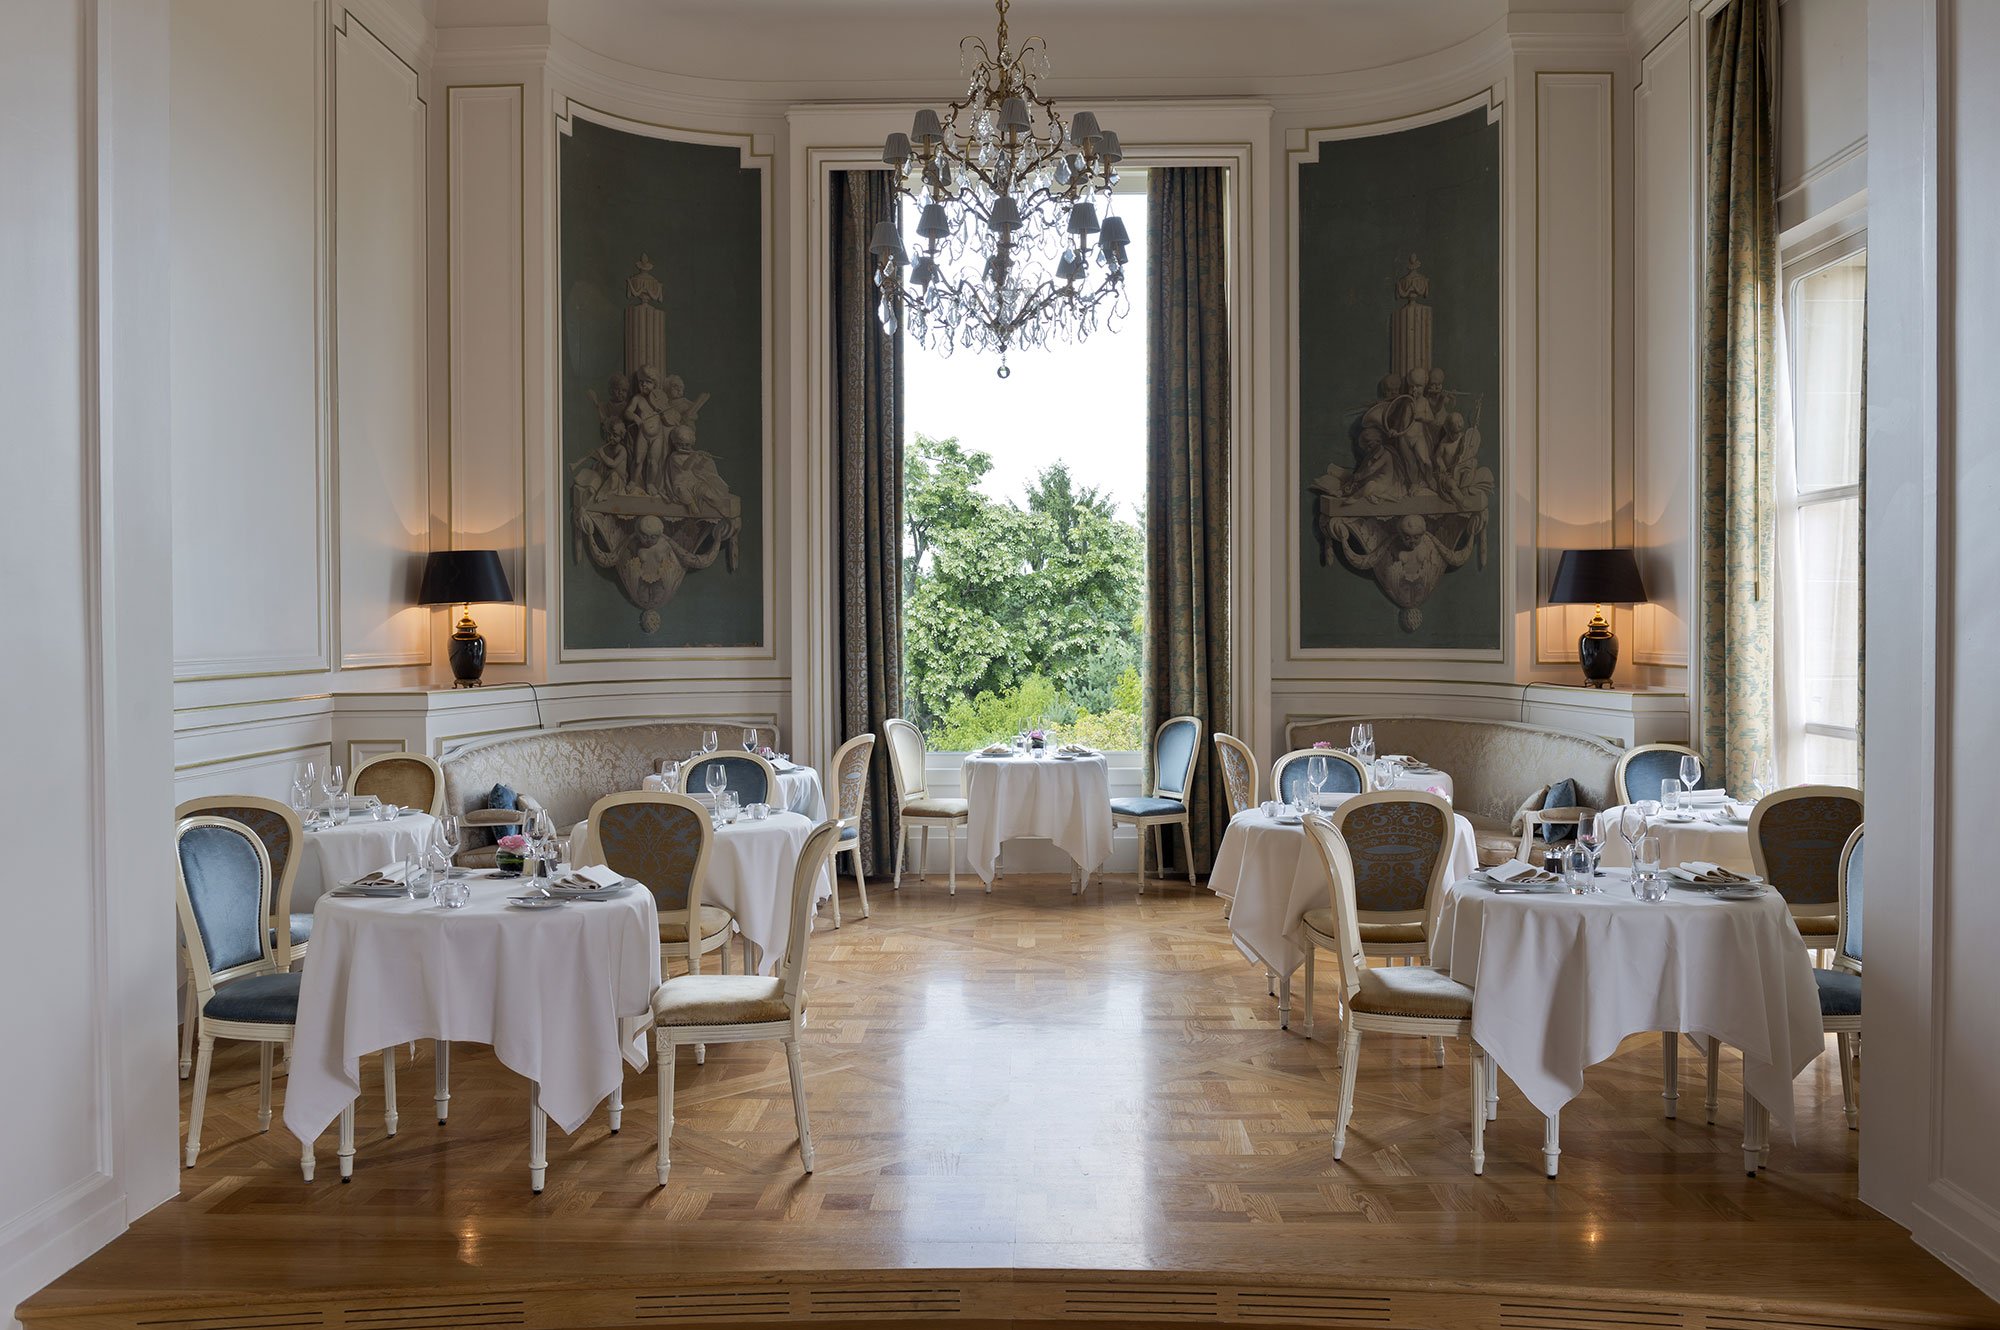 L’Opéra - Restaurant dans un château de l’Oise